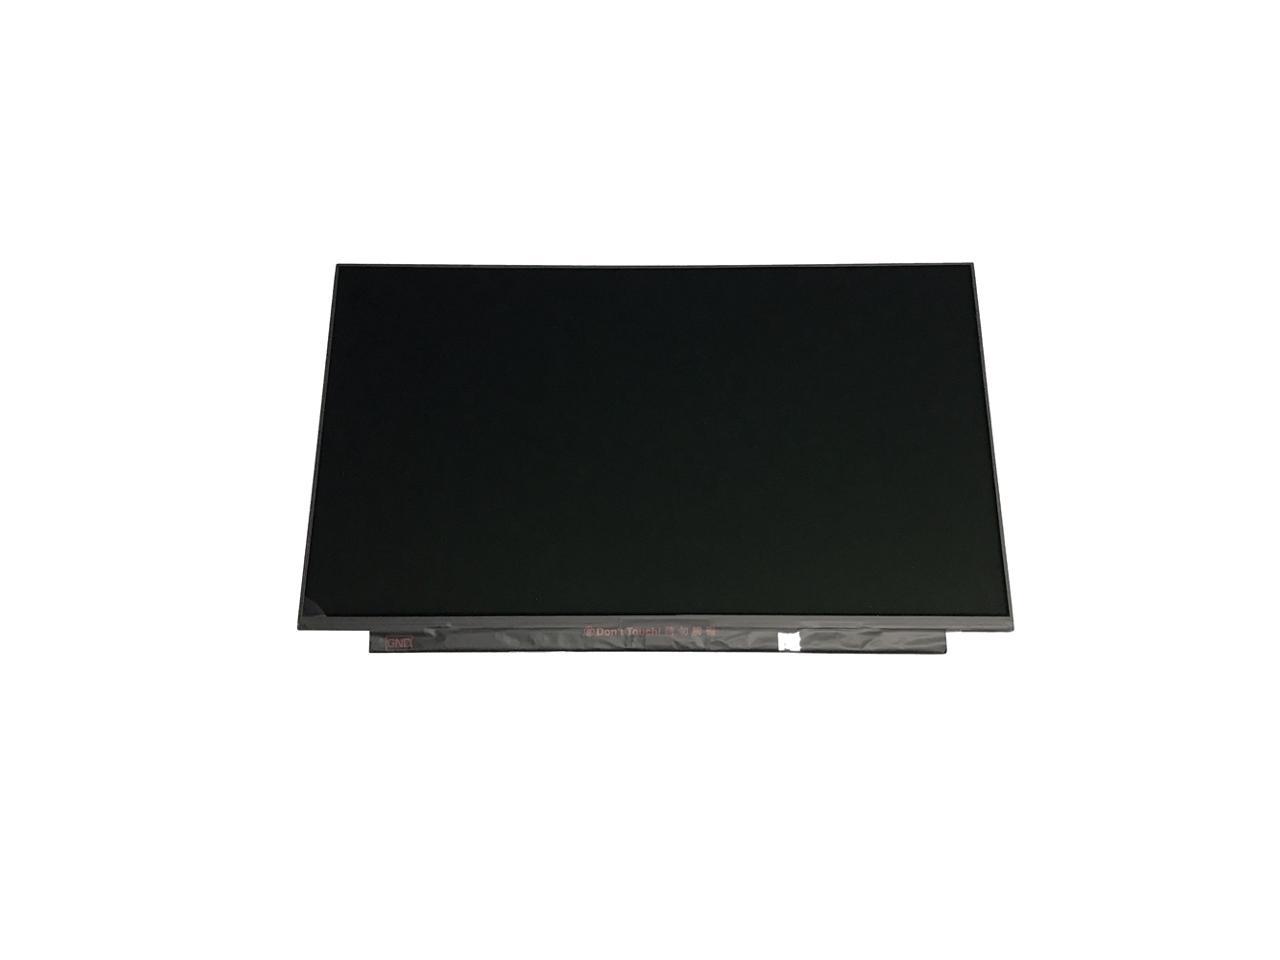 15 BW059SA 15.6 Razor Slim LED LCD 1366×768 WXGA HD Display 30 Pin Matte Panel Non Touch UK Shipping New Laptop Screen Replacement For HP 15-AY106NX,15-AY106TU,15-AY106TX,15-AY106UR